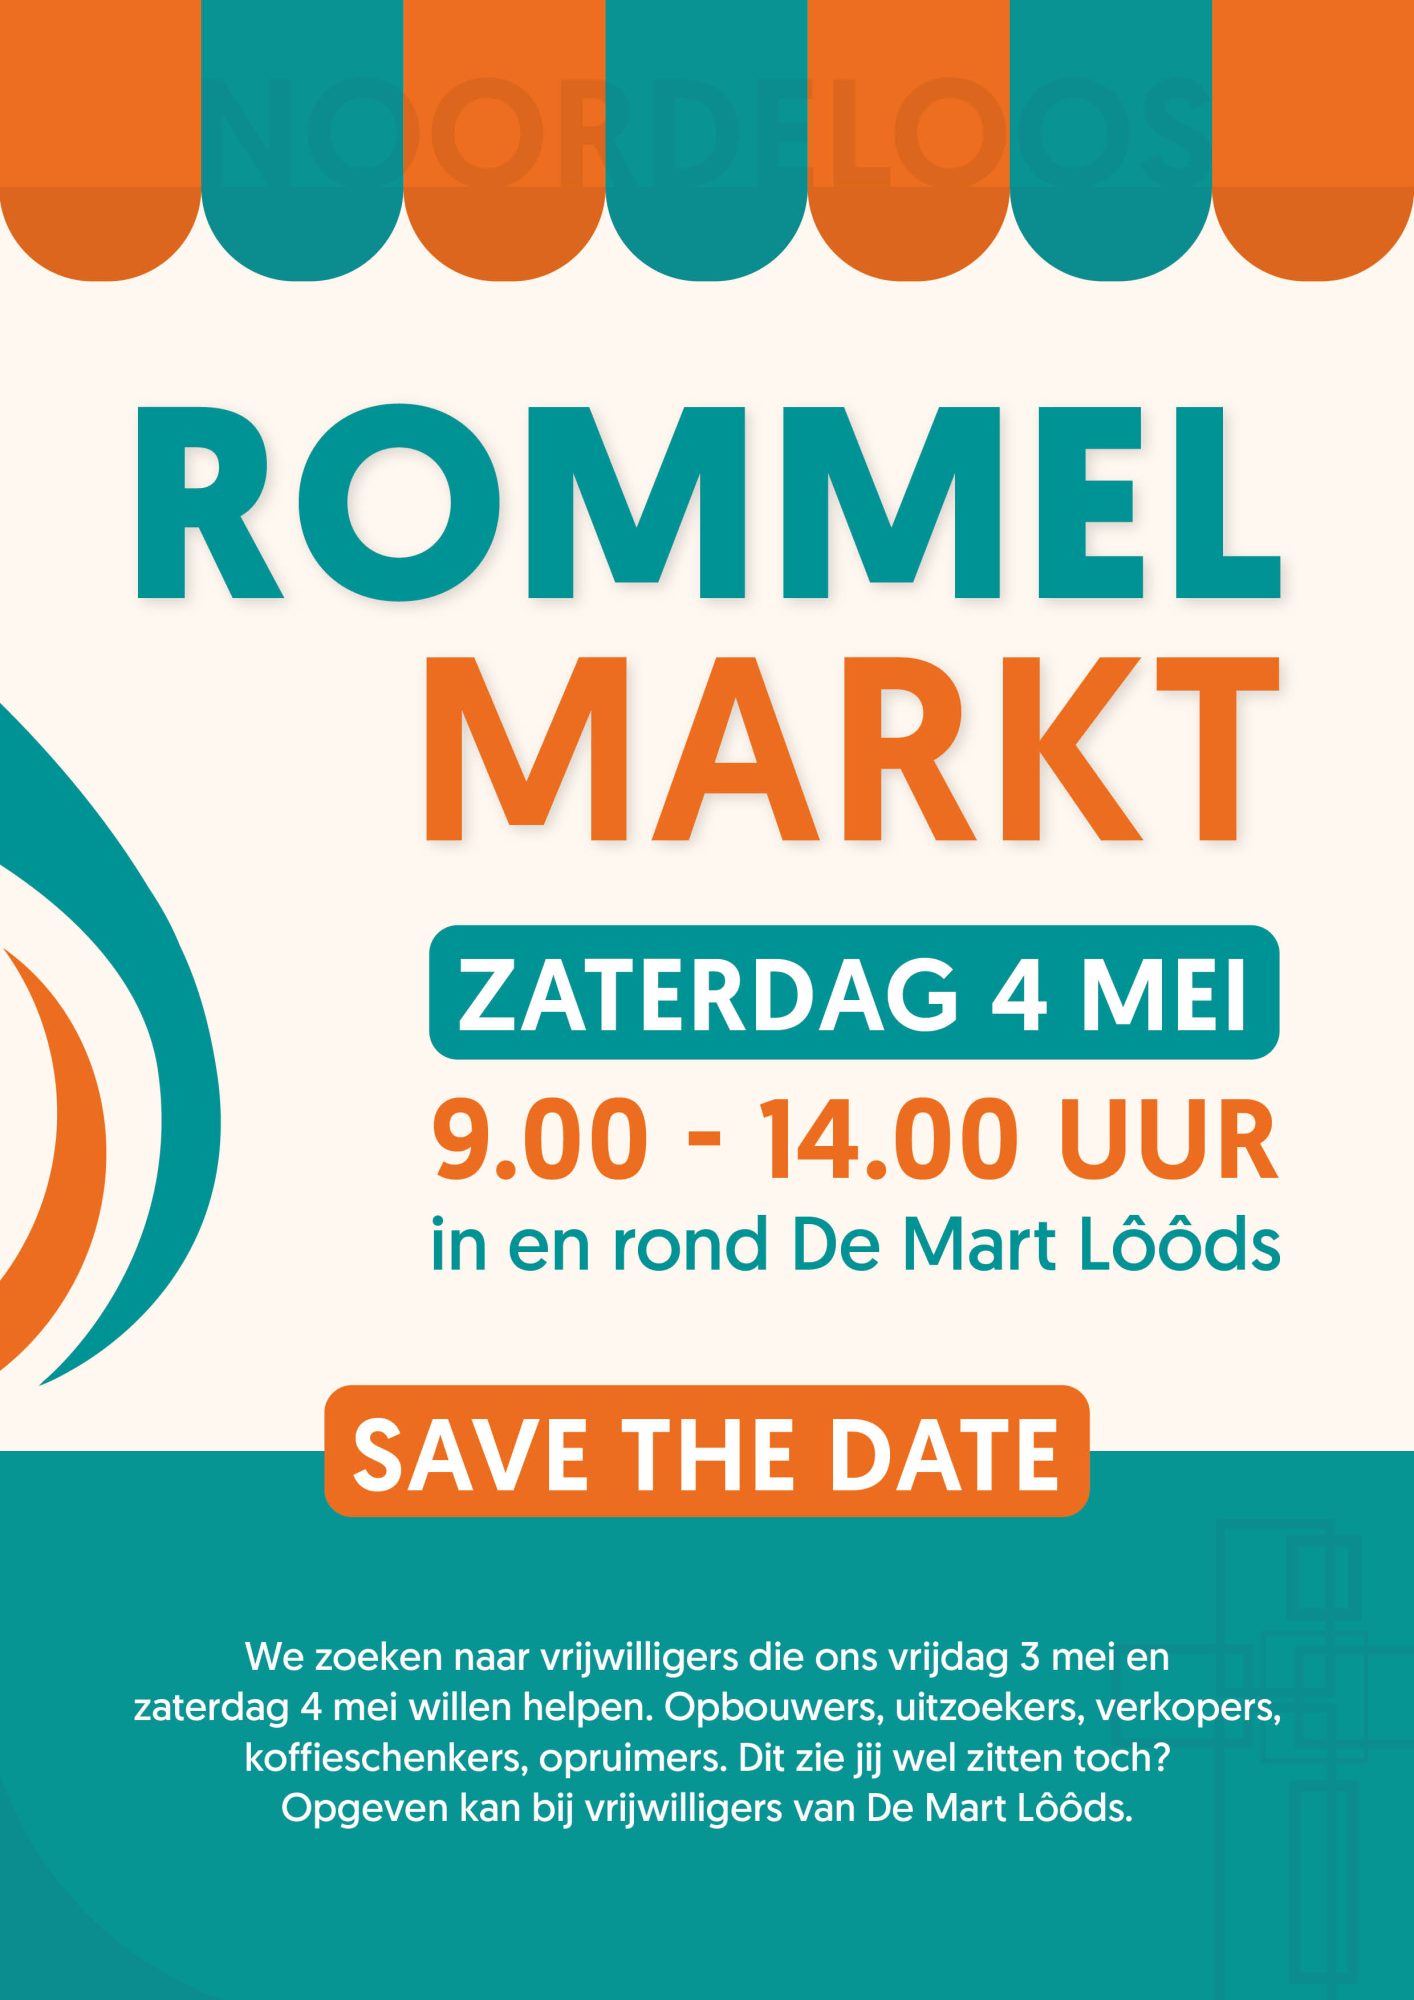 Save the date – zaterdag 4 mei rommelmarkt